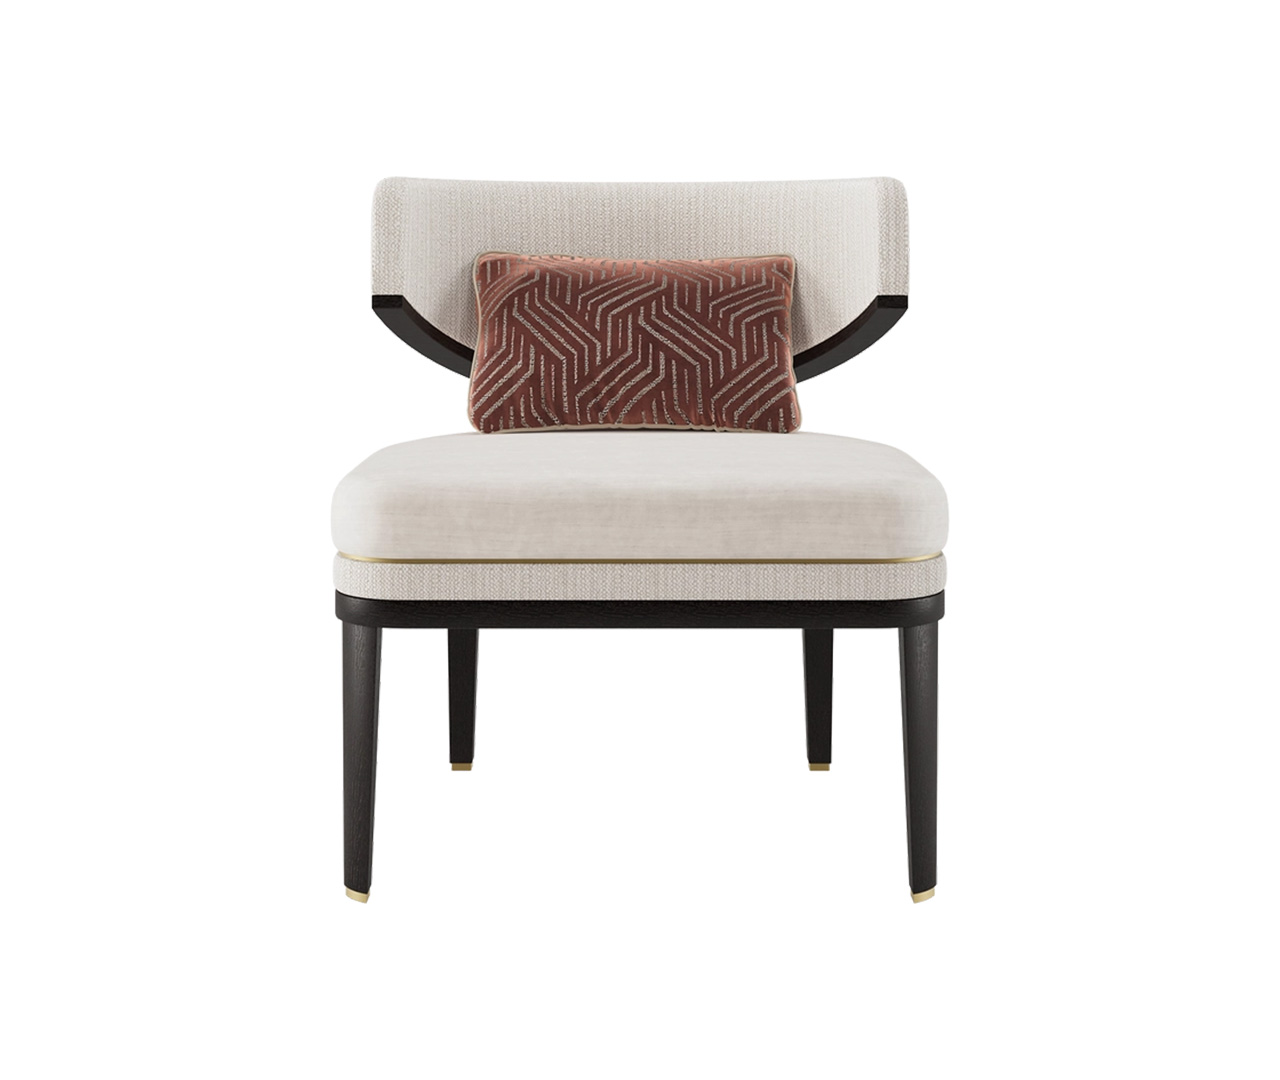 Basic Upholstered Wooden Armchair